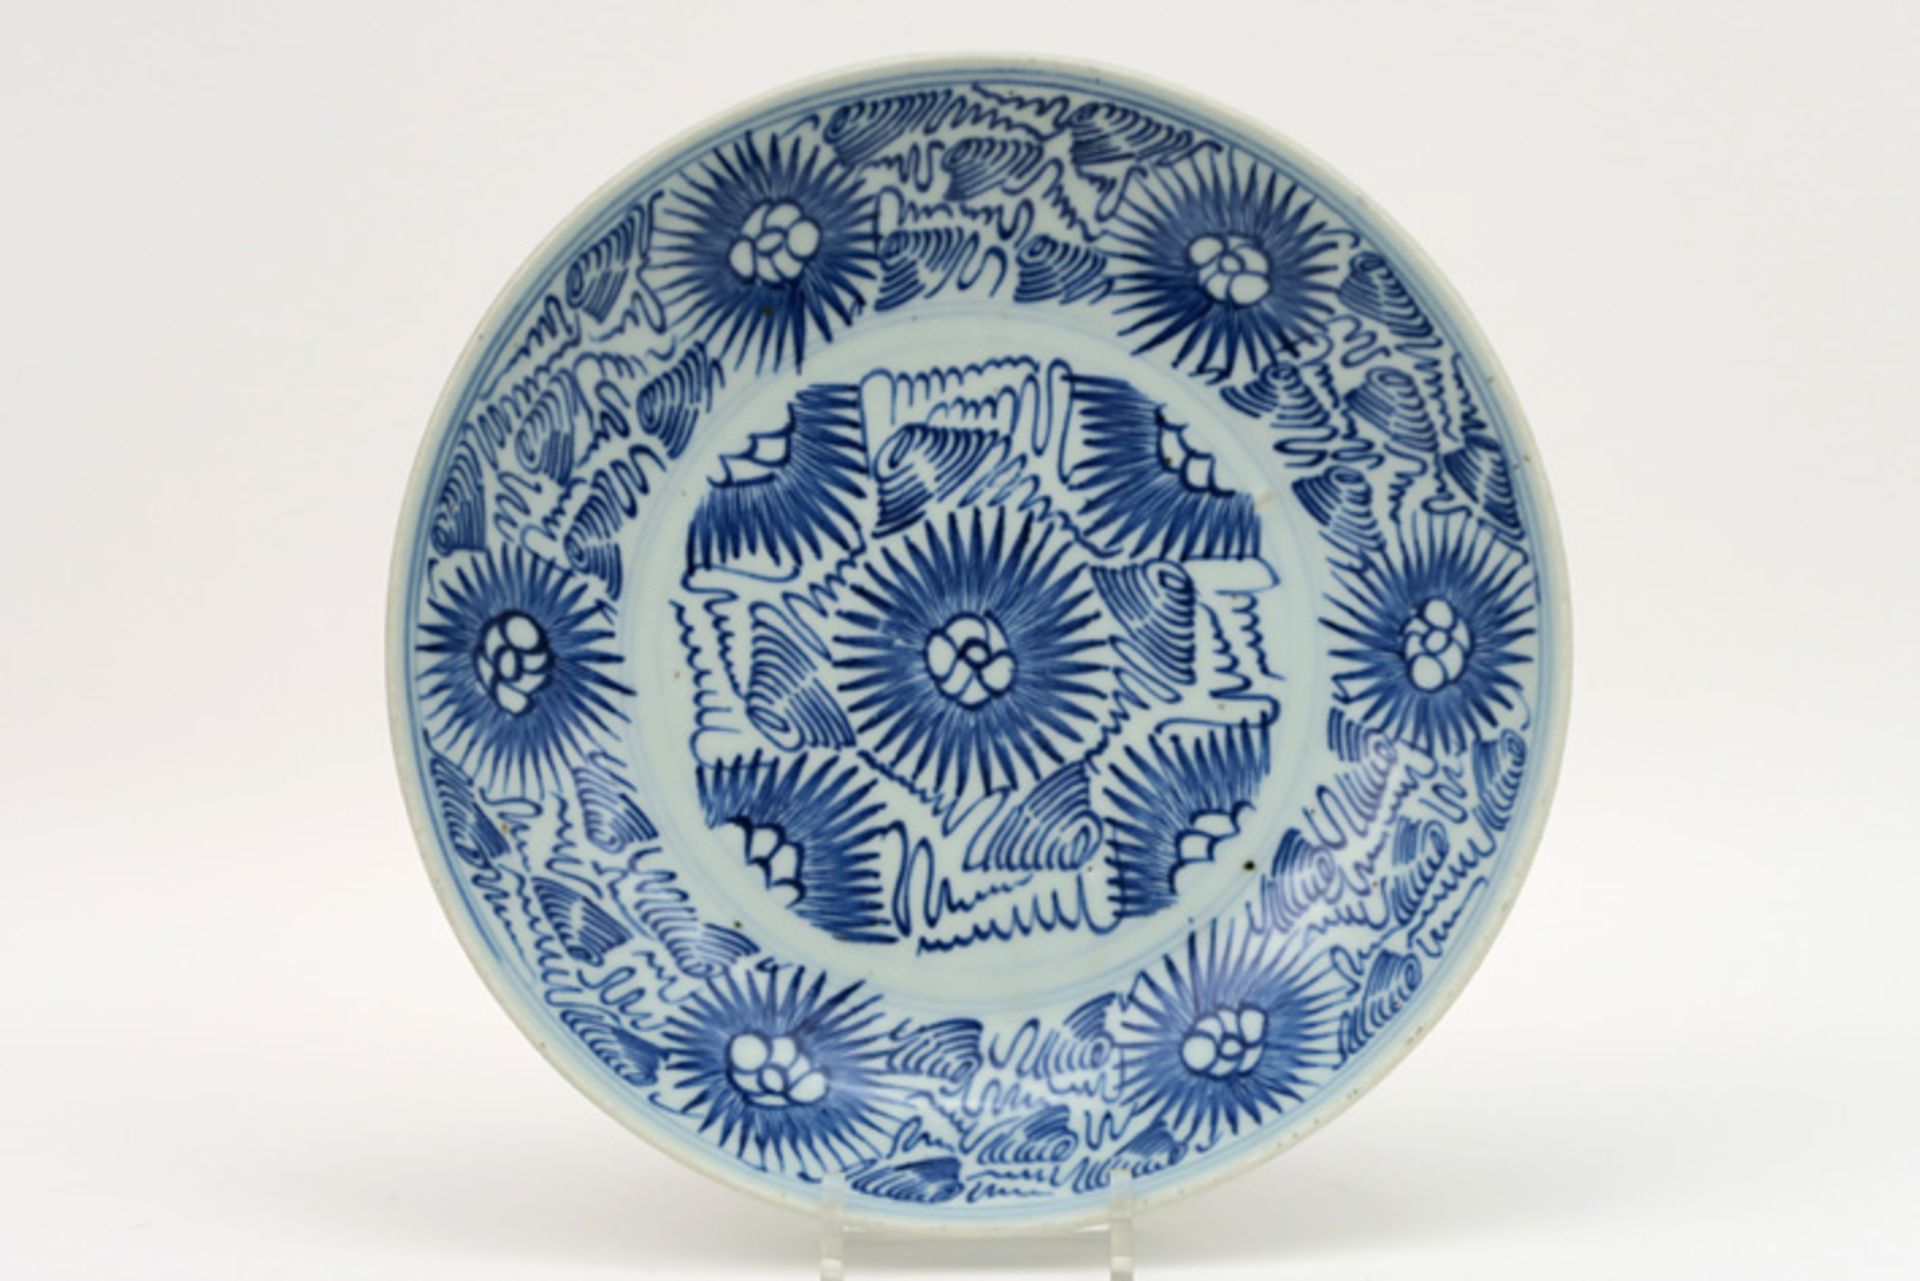 Chinese schaal in porselein met een blauwwit decor met gestileerde bloemen - diameter : 27 cm ||